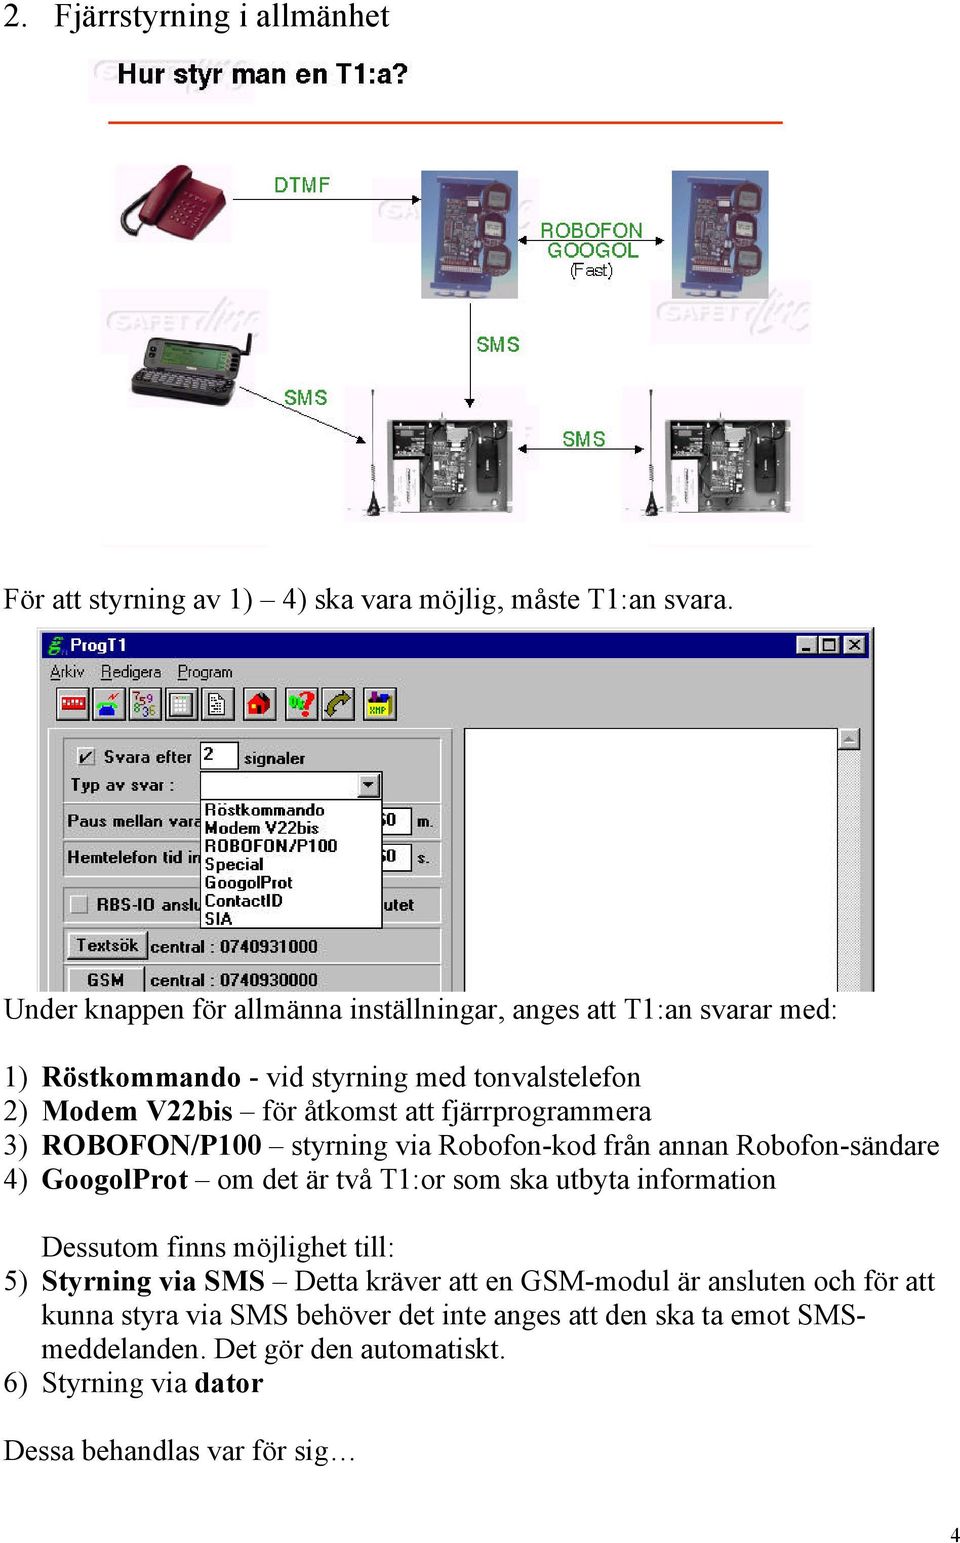 fjärrprogrammera 3) ROBOFON/P100 styrning via Robofon-kod från annan Robofon-sändare 4) GoogolProt om det är två T1:or som ska utbyta information Dessutom finns